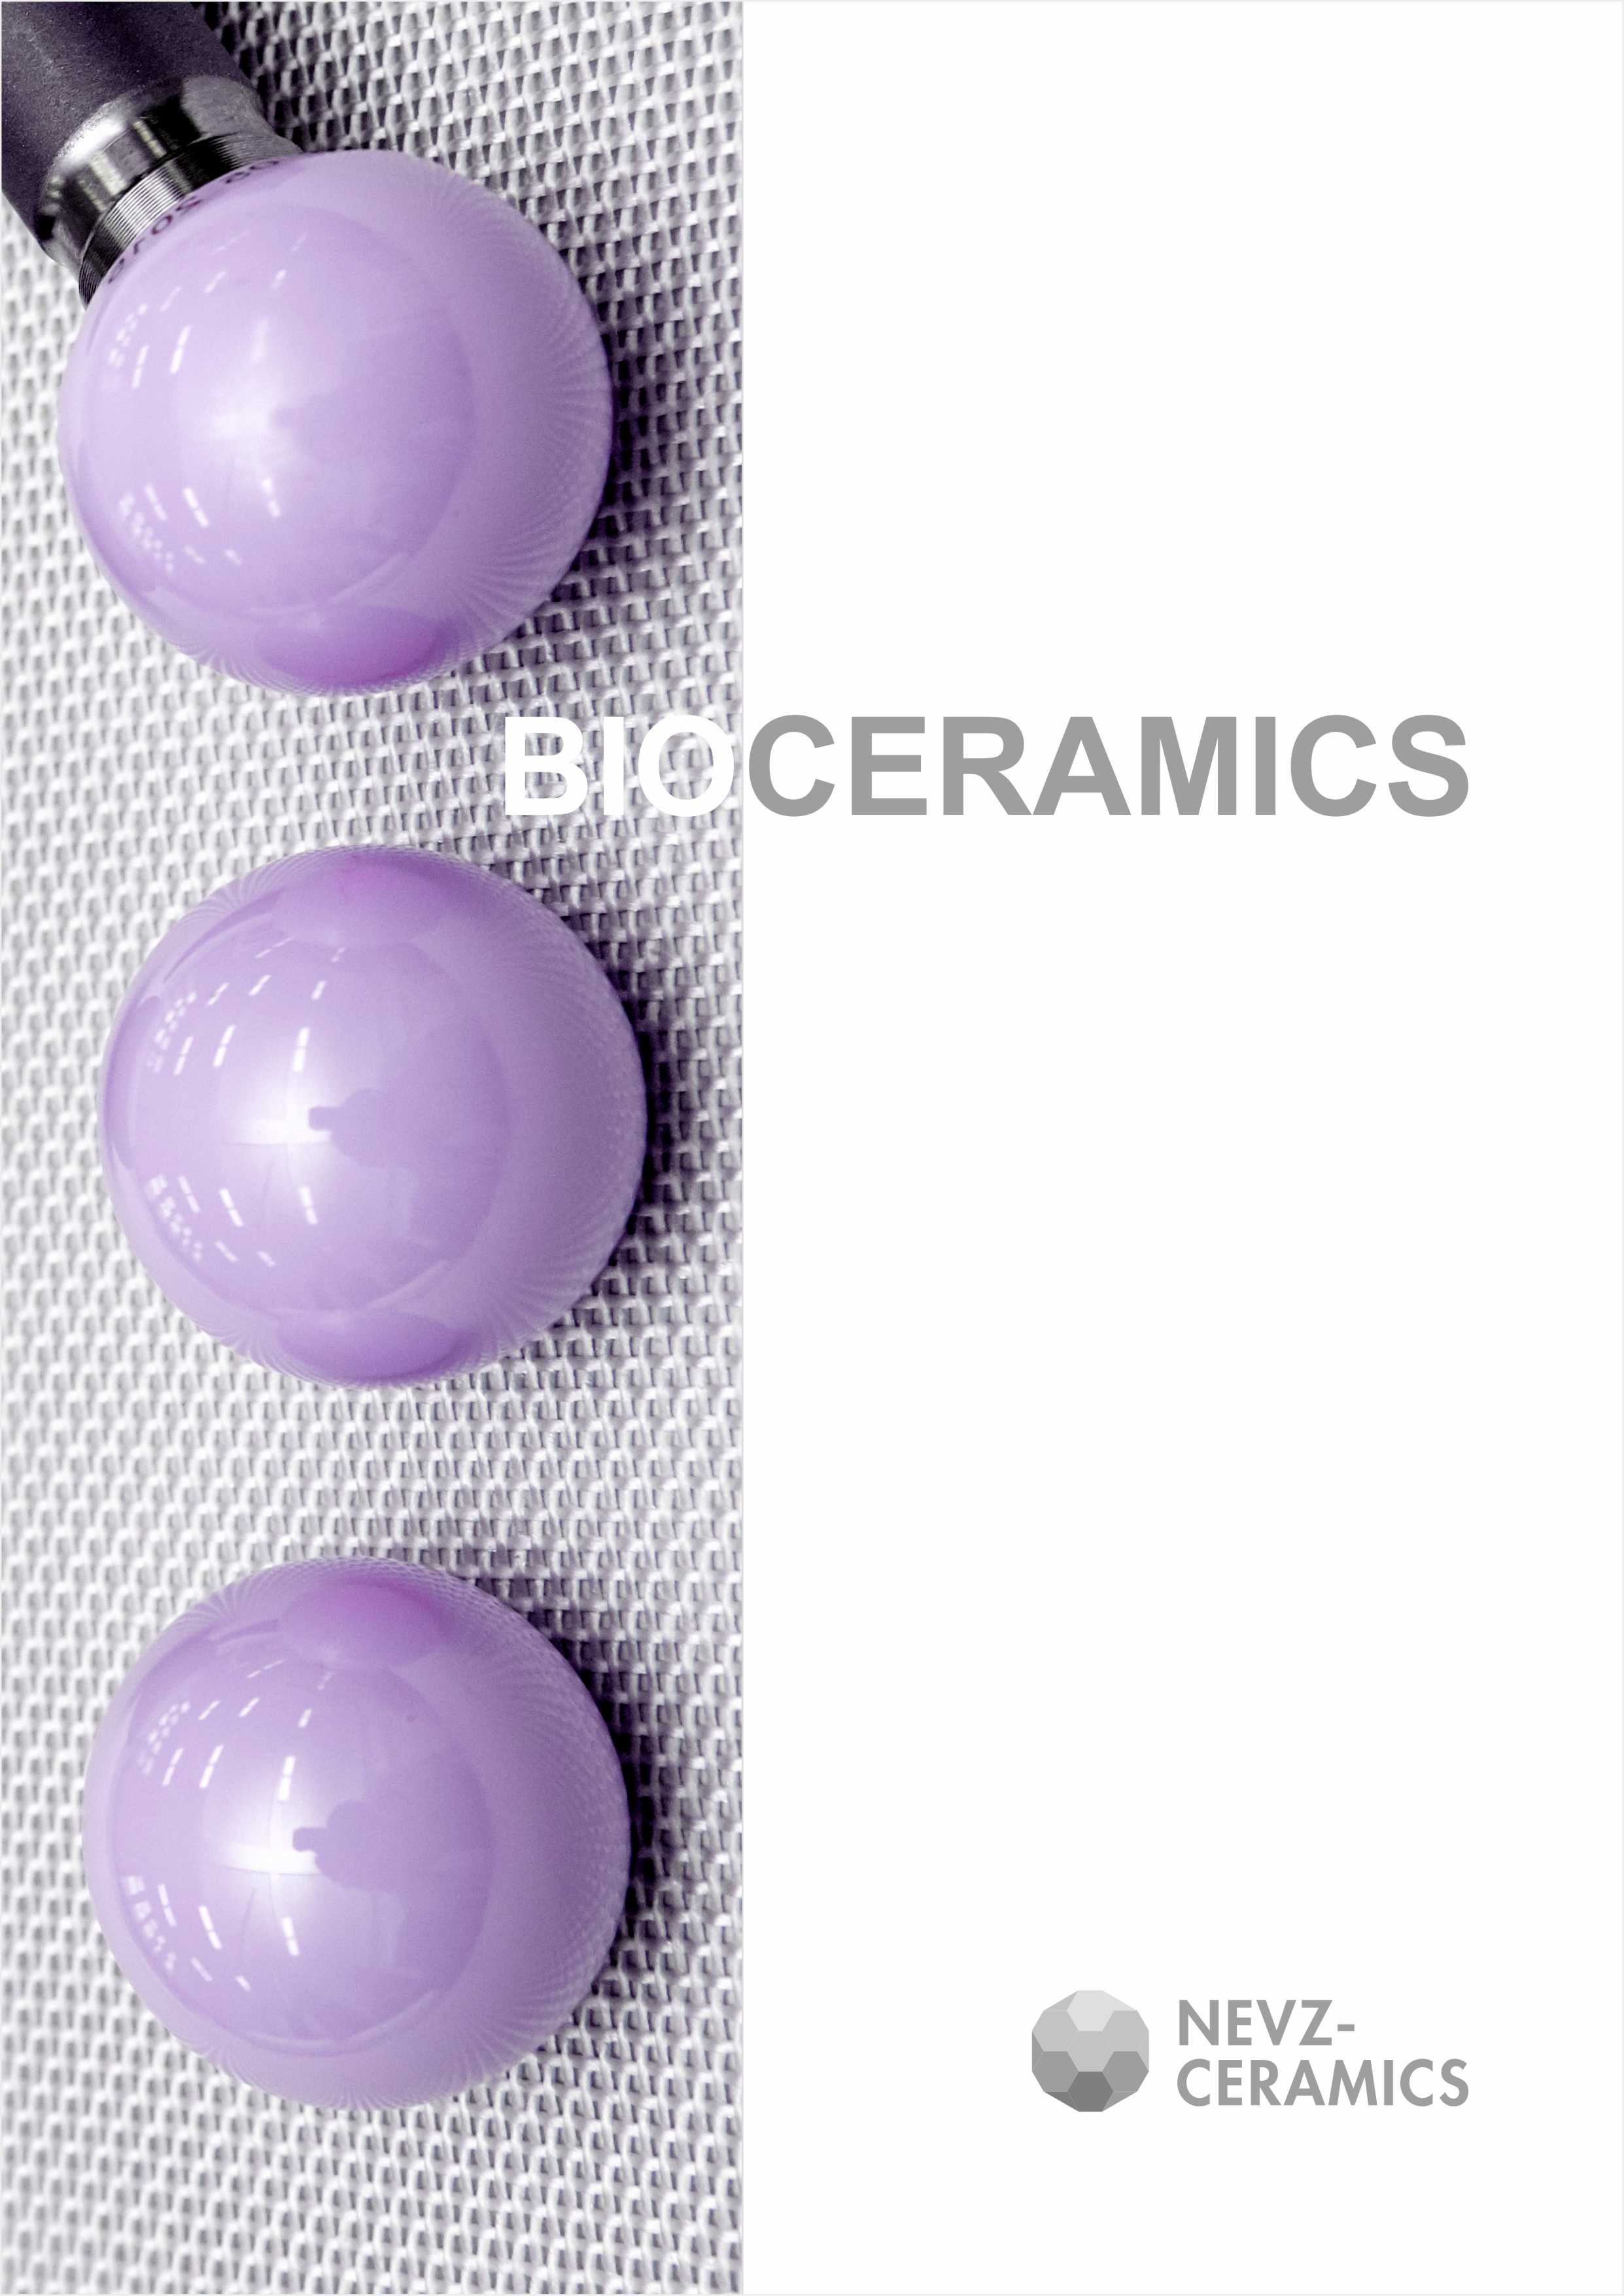 Bio-ceramics